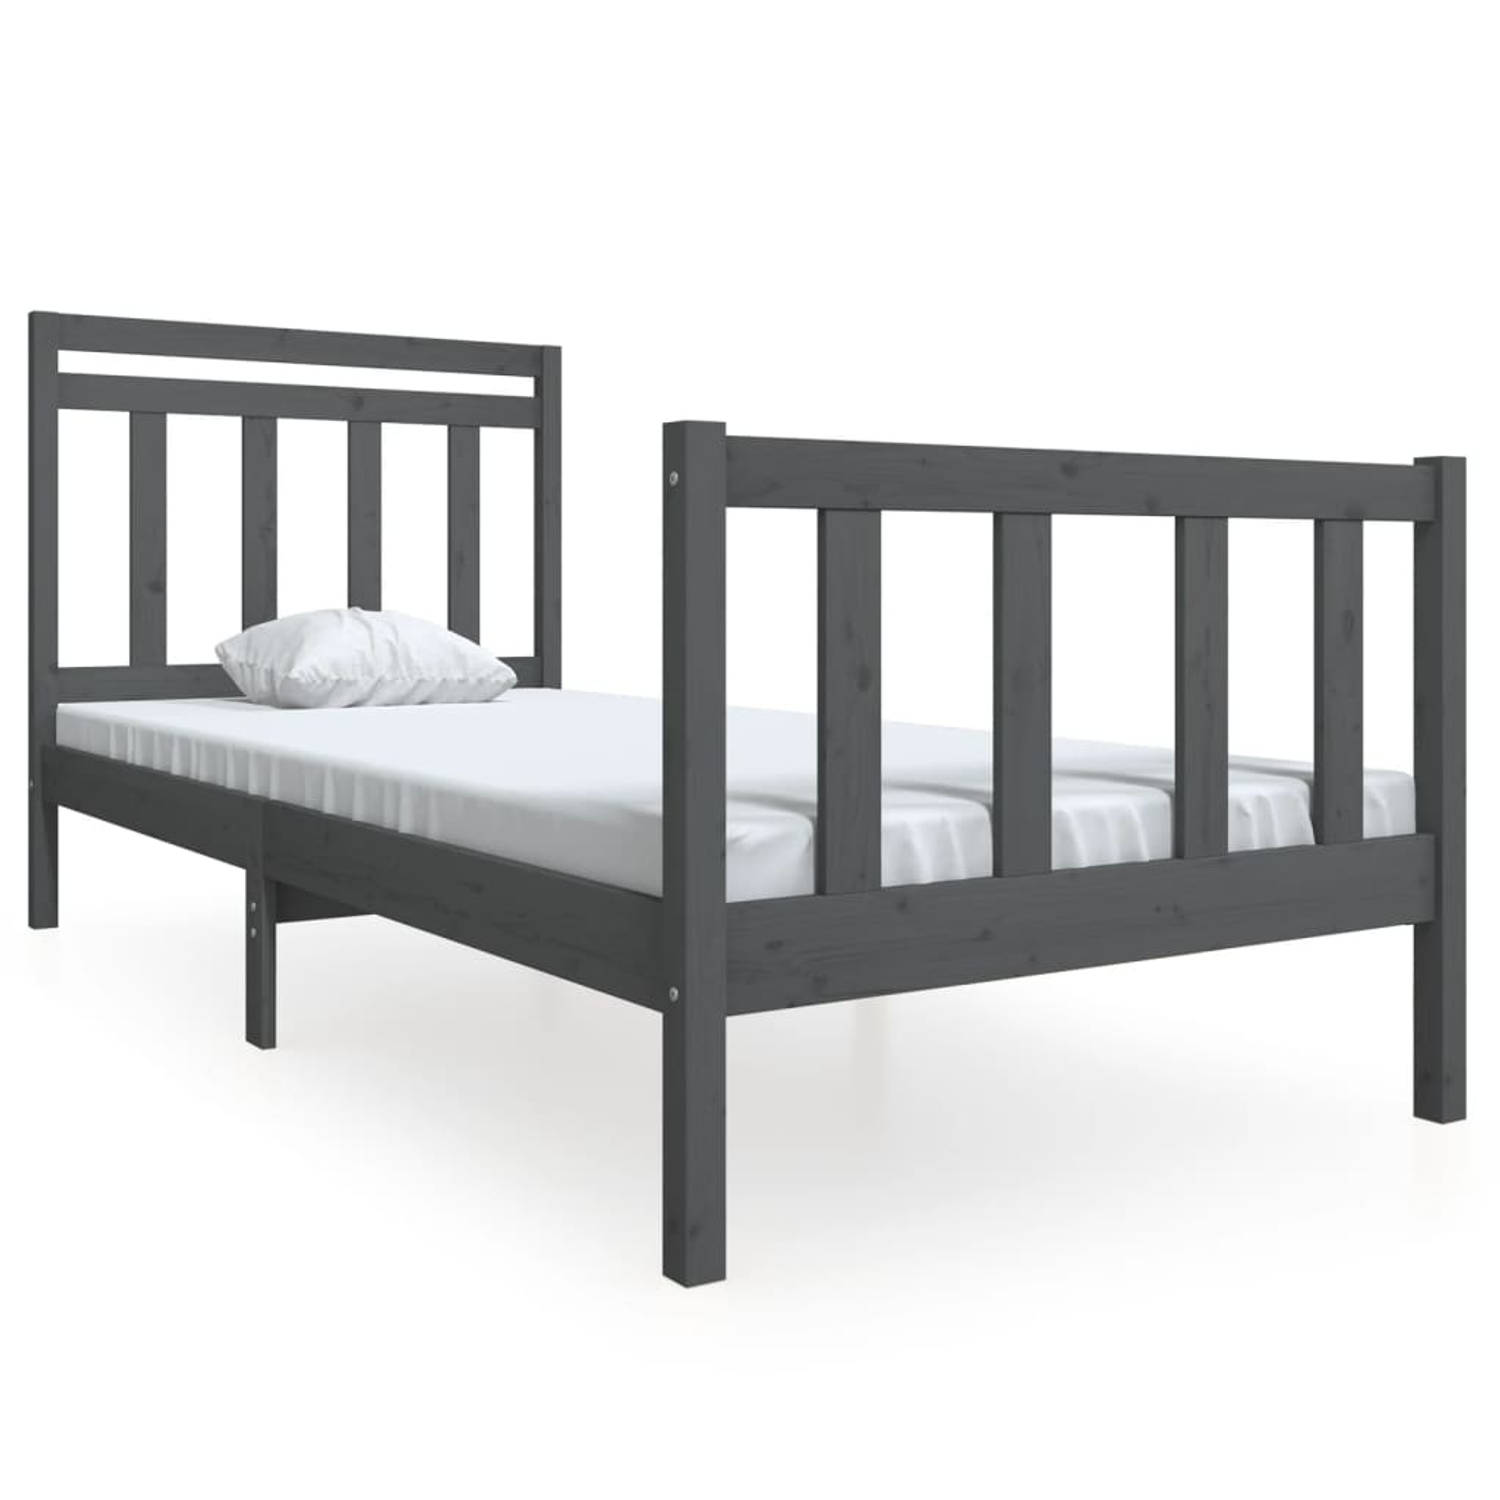 The Living Store Bedframe massief hout grijs 100x200 cm - Bedframe - Bedframes - Eenpersoonsbed - Bed - Bedombouw - Frame - Bed Frame - Ledikant - Bedframe Met Hoofdeinde - Eenpers